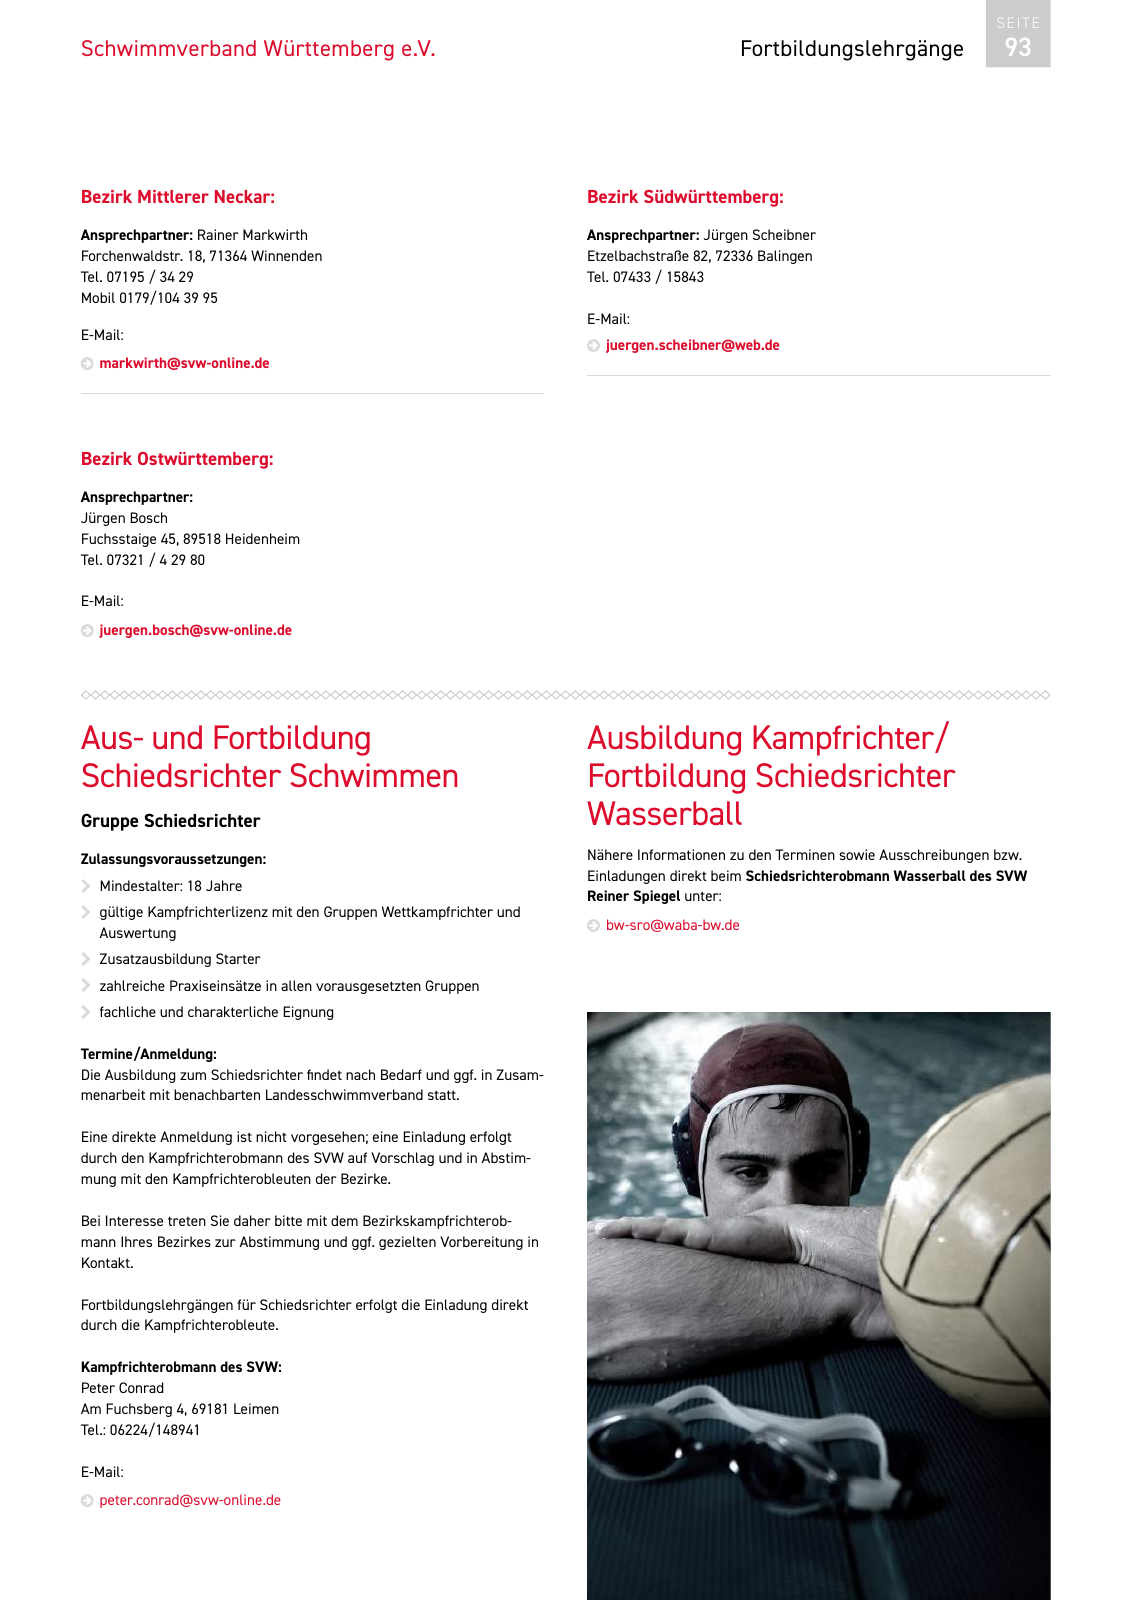 Vorschau Lehrgänge 2019 // Akademie des Schwimmsports Seite 93